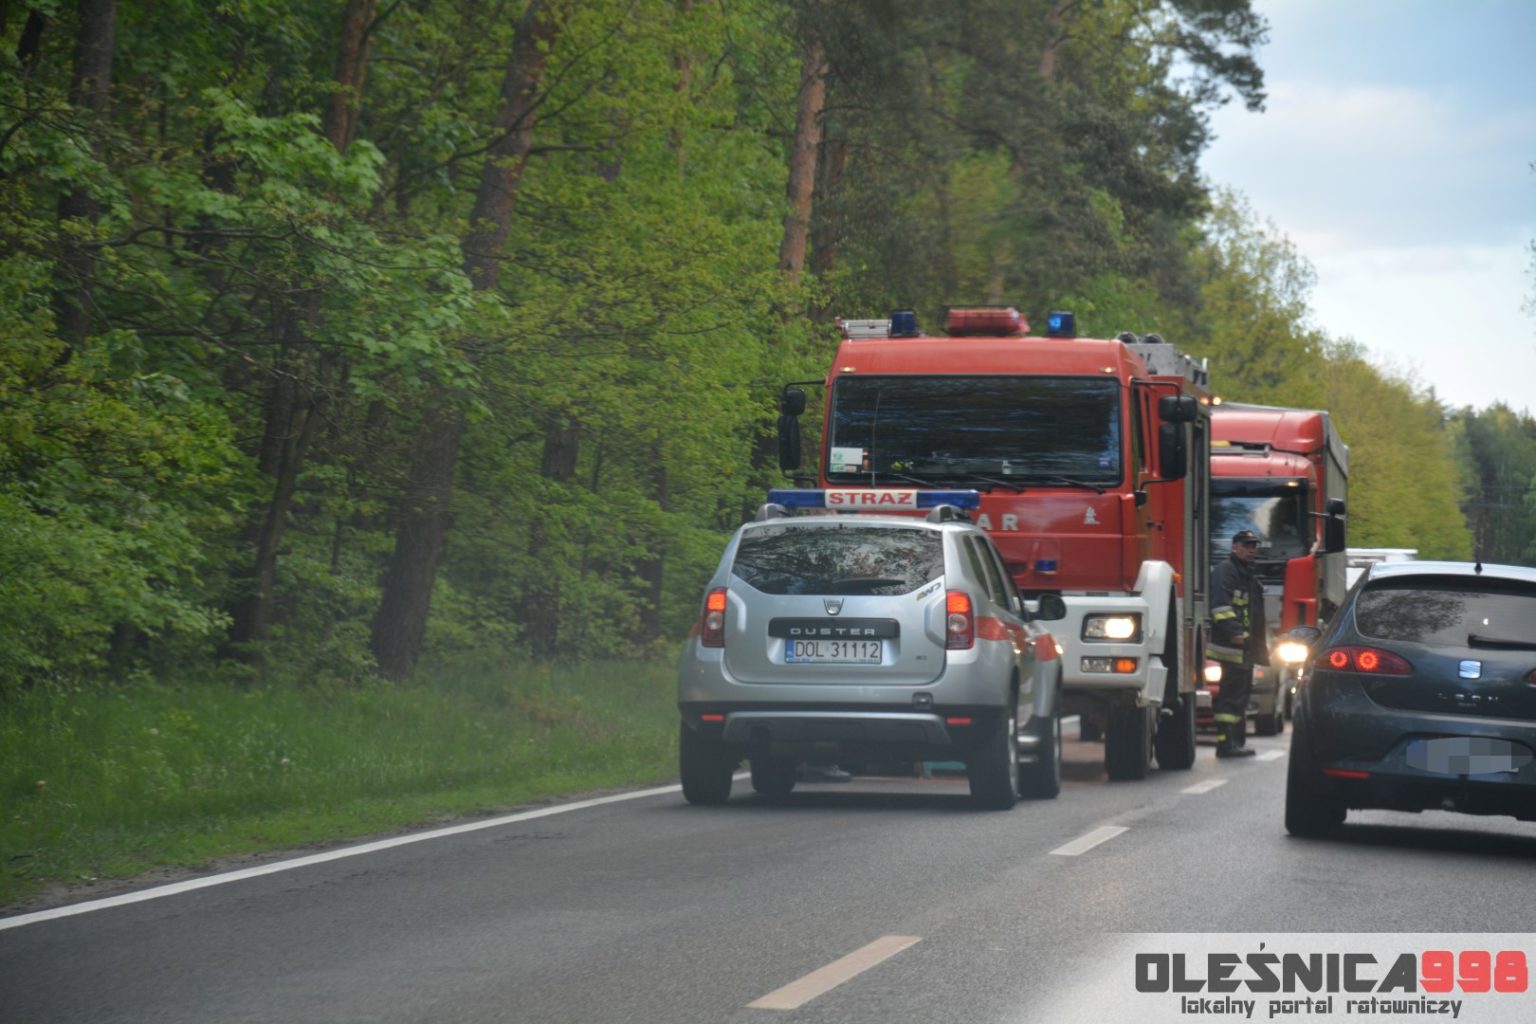 Wypadki drogowe na DK 25 FOTO Oleśnica998